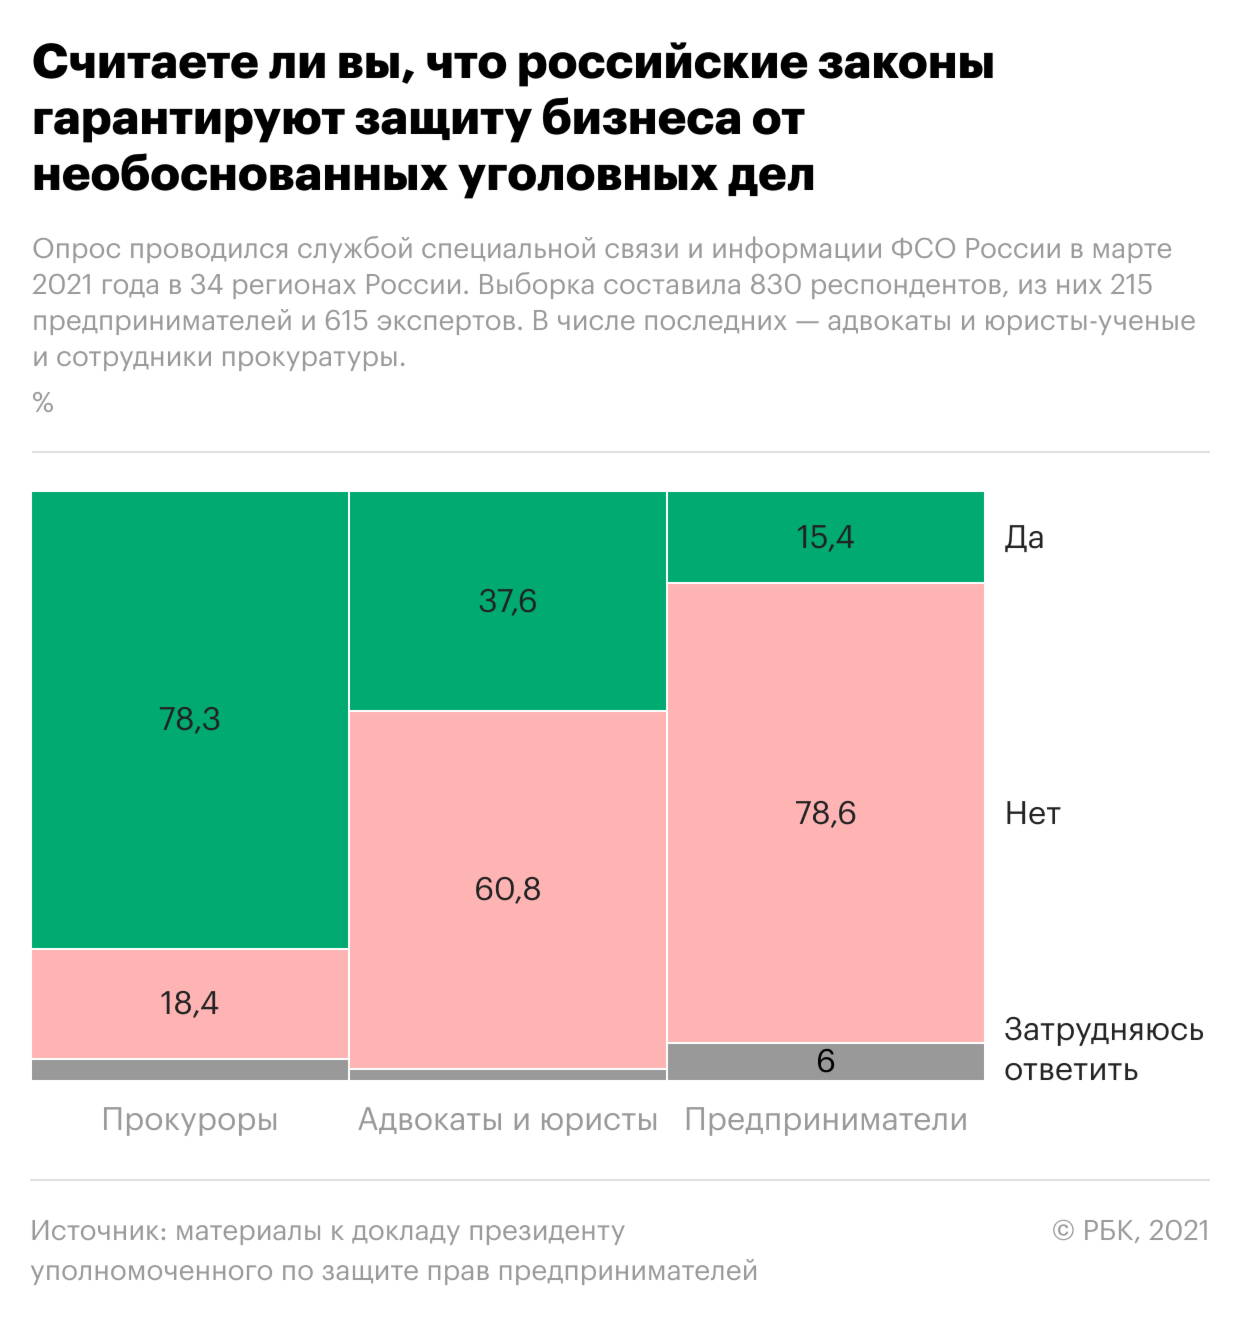 Почти пятая часть прокуроров сочли ведение бизнеса в России небезопасным